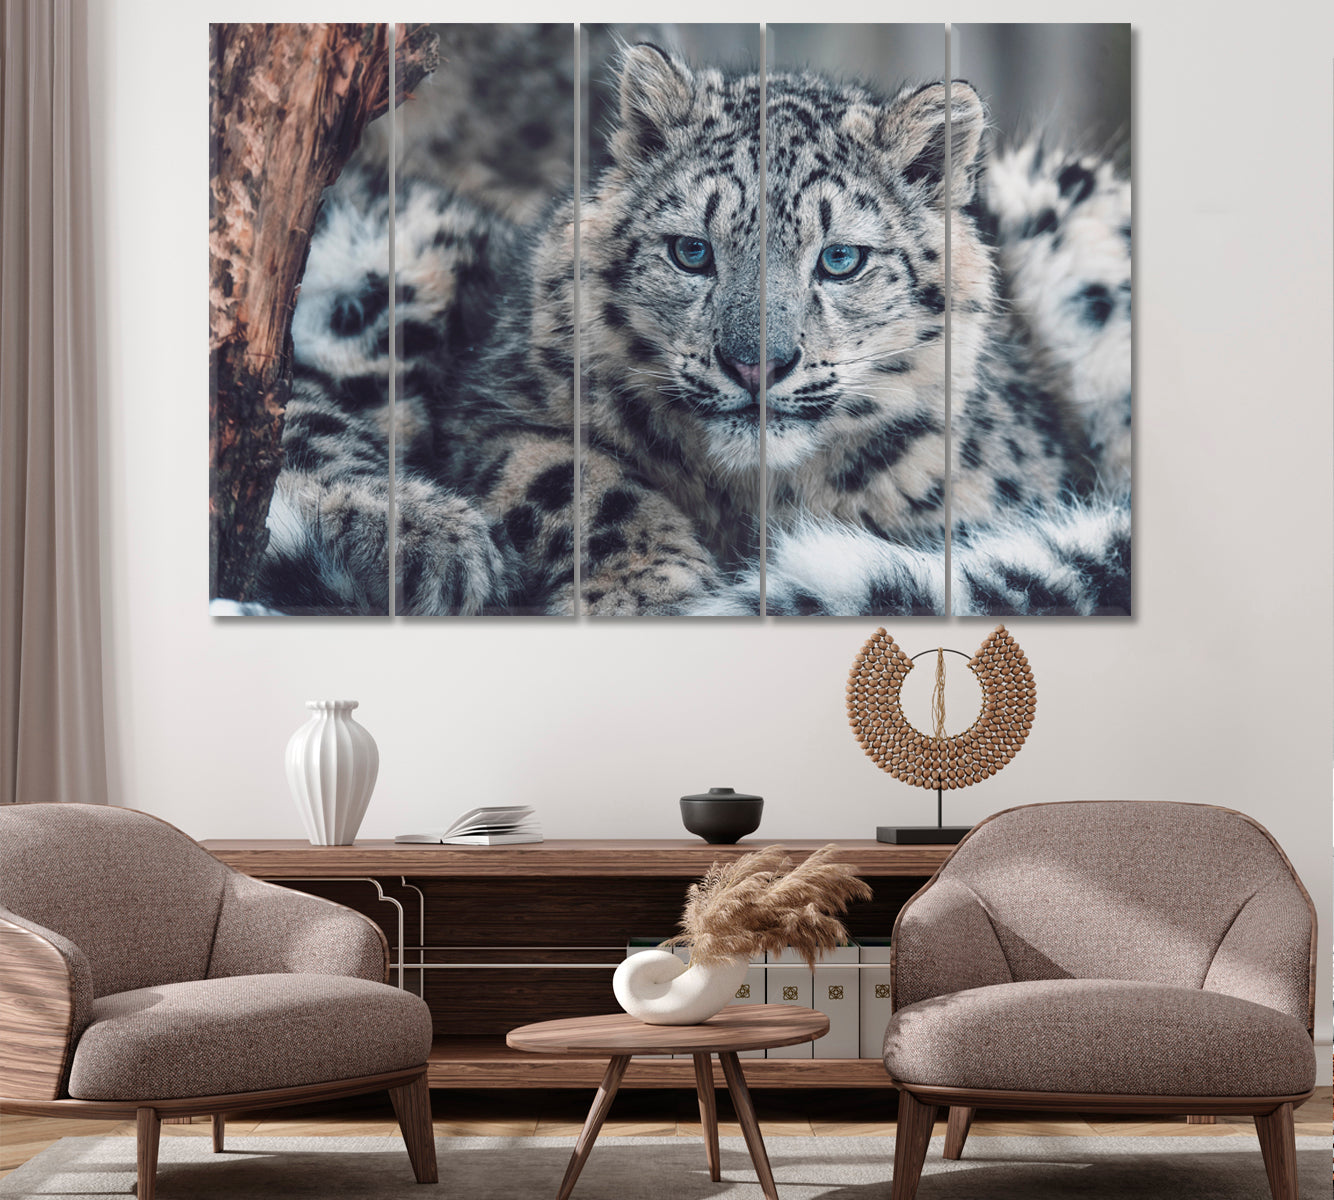 Snow Leopard Portrait Canvas Print ArtLexy 5 Panels 36"x24" inches 